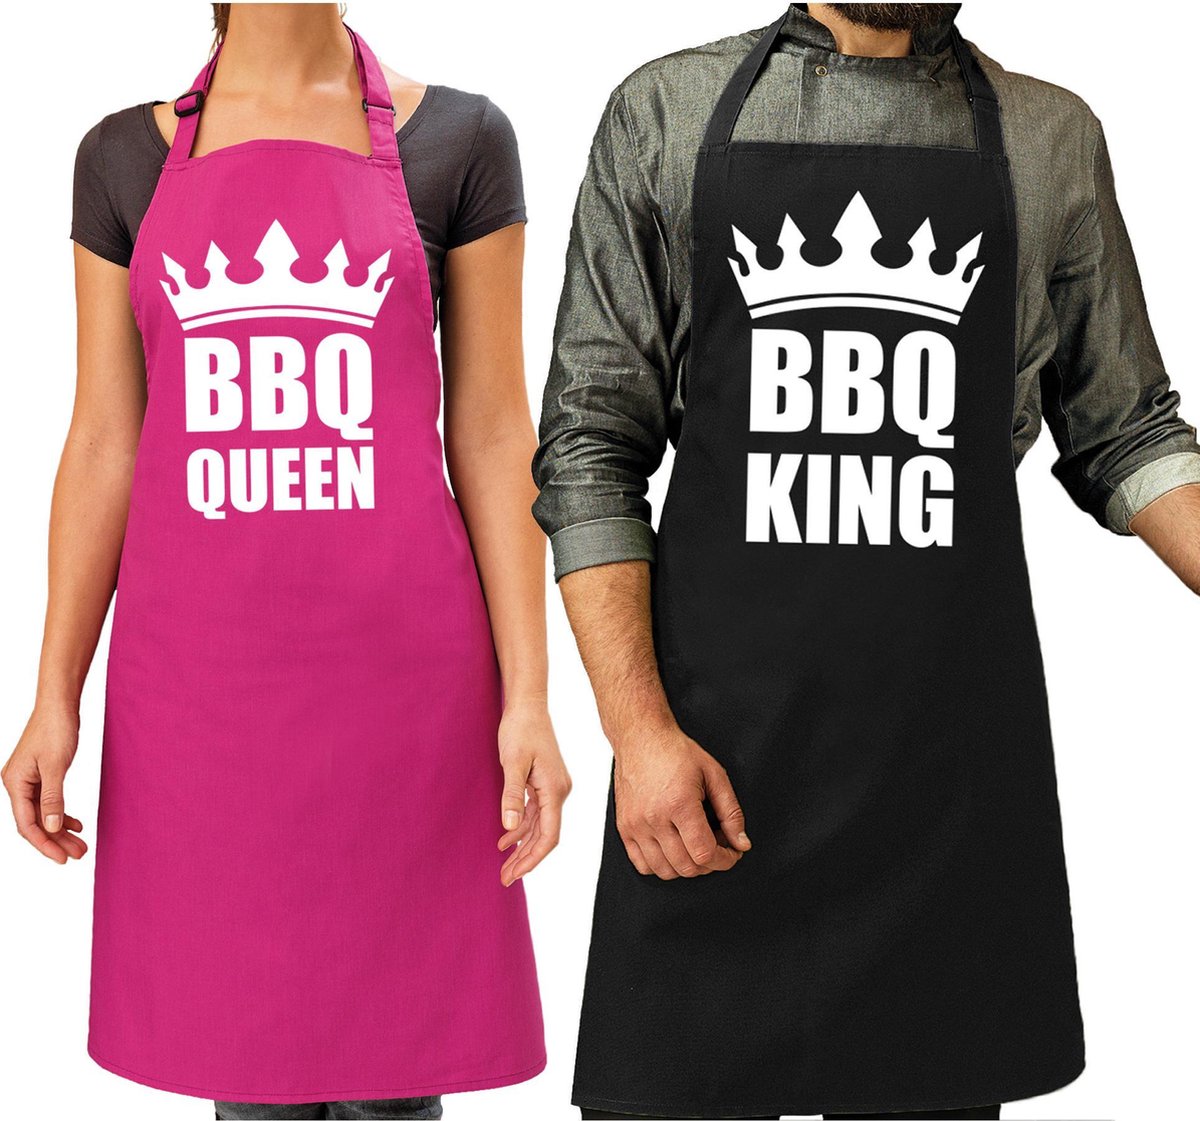 Koppel cadeau set: 1x BBQ King schort zwart heren + 1x BBQ Queen roze dames - Cadeau huwelijk/ bruiloft/ verjaardag